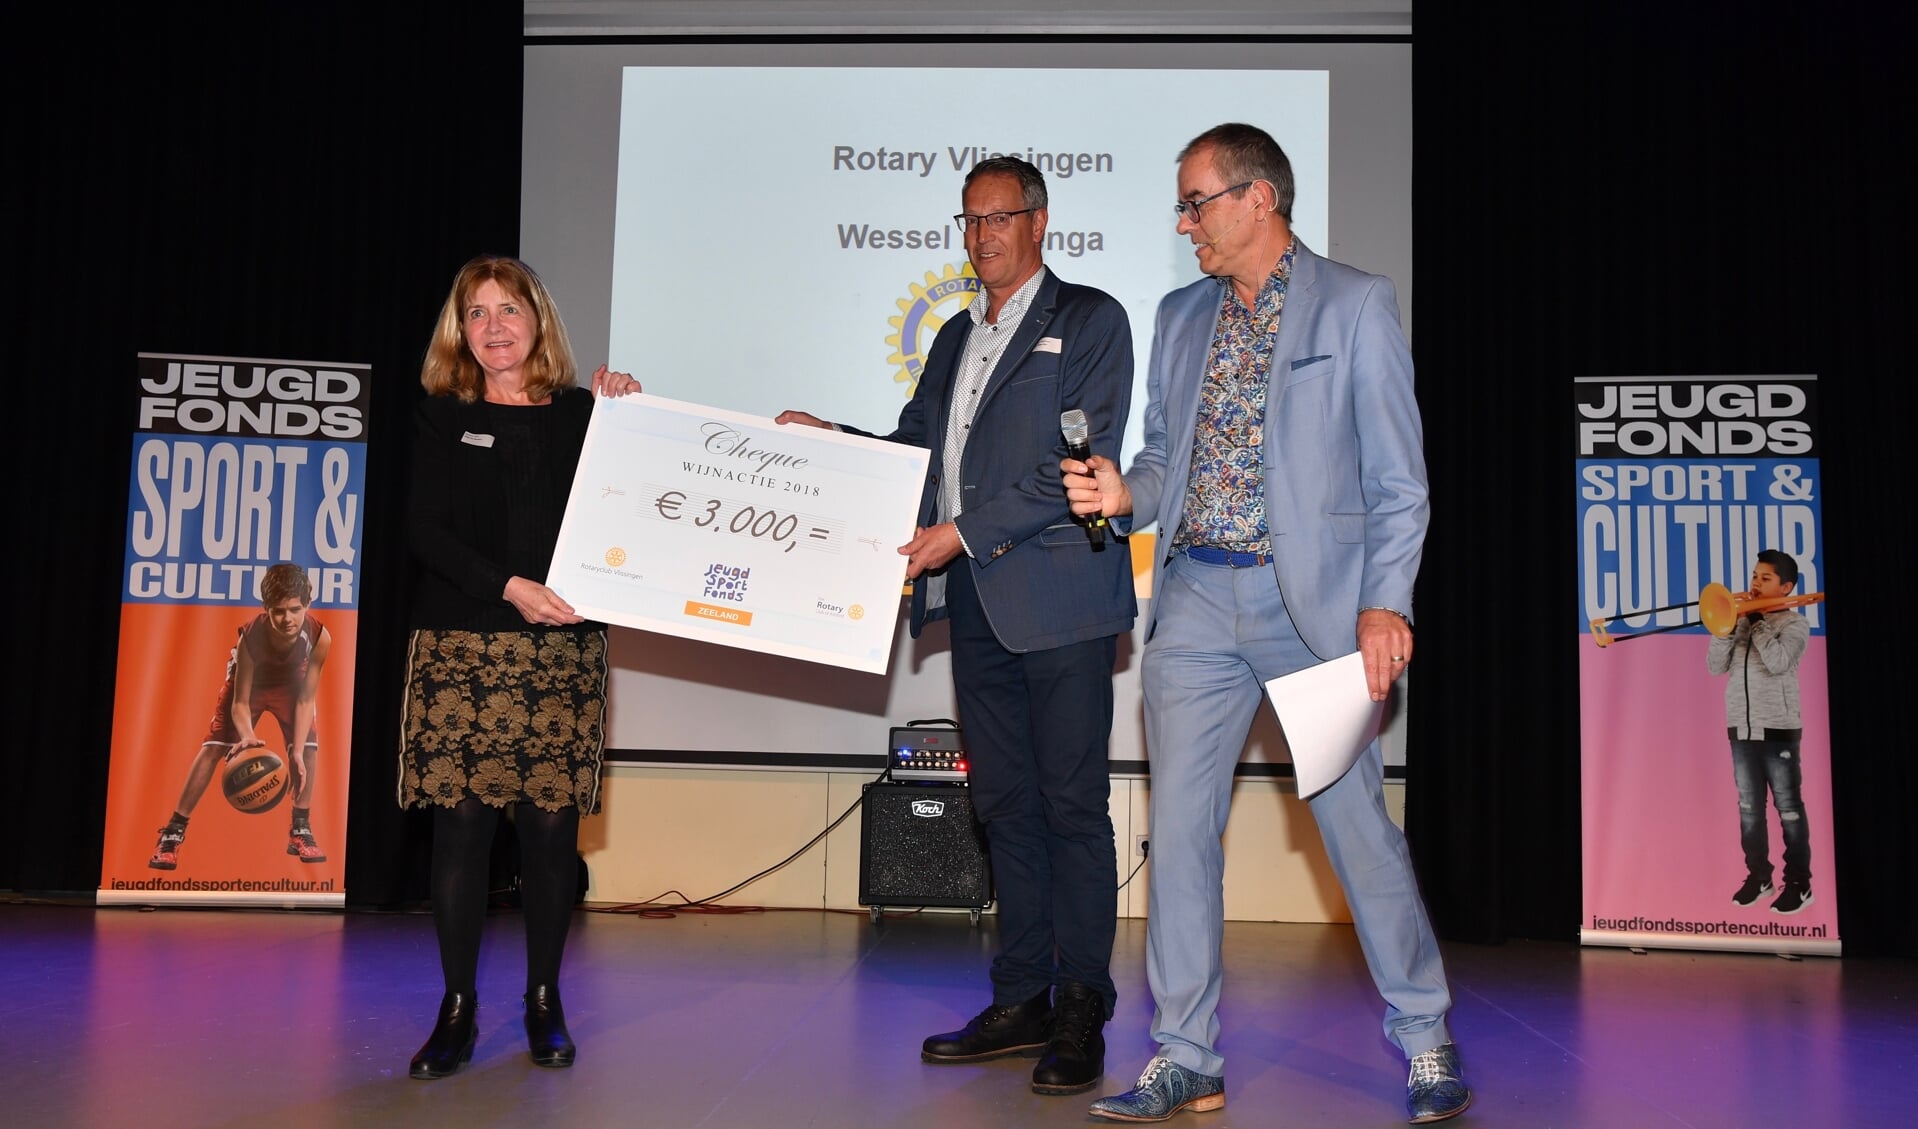 Oud-voorzitter Jan Kees Mol van de Rotaryclub Vlissingen overhandigt de cheque aan Anja de Groene van het Jeugdfonds Sport & Cultuur Zeeland. FOTO CO COPPOOLSE